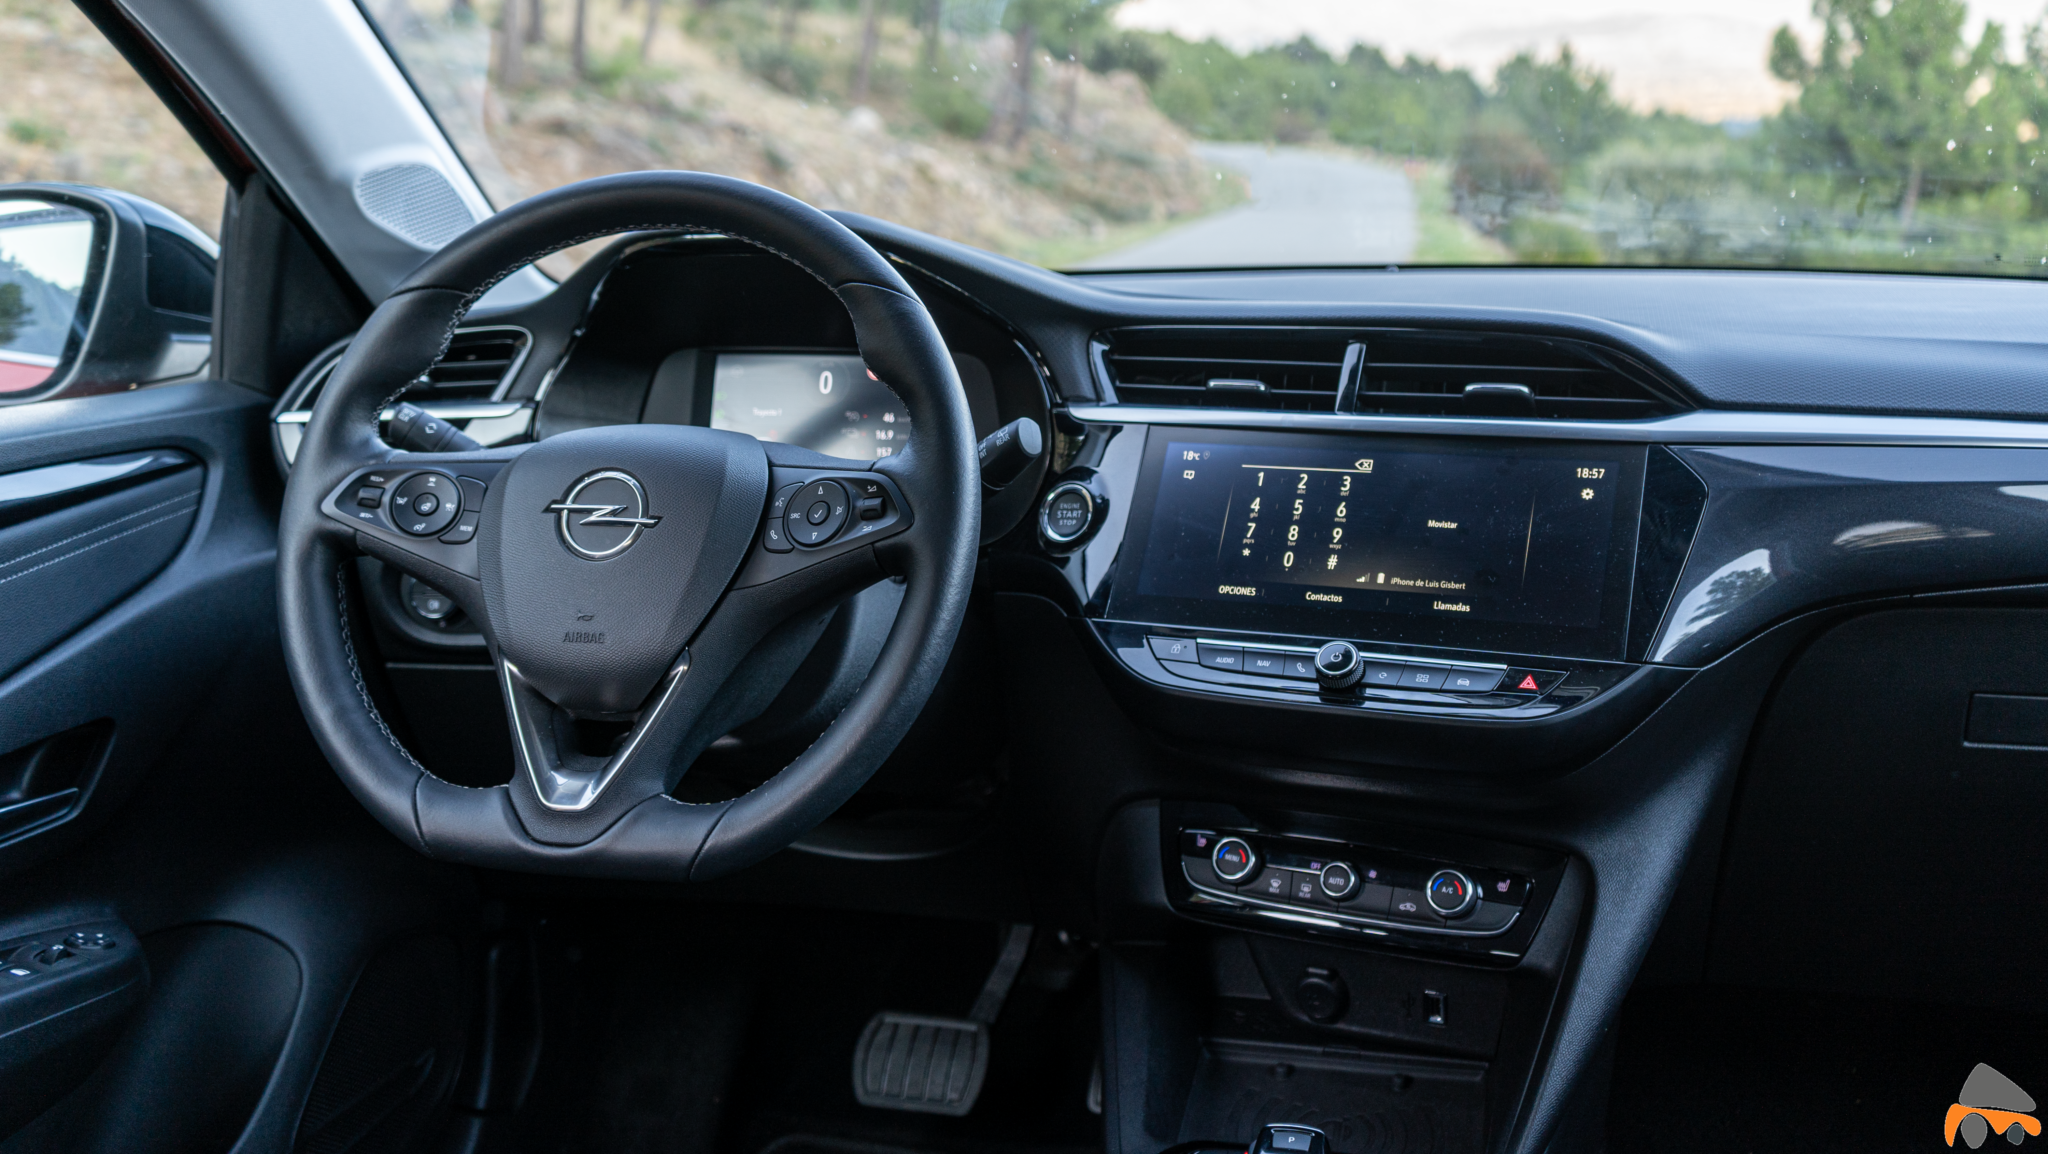 Puesto de conduccion Opel Corsa e - Prueba Opel Corsa-e 2020: El primer coche eléctrico de Opel tiene 136 CV y 280 km reales de autonomía